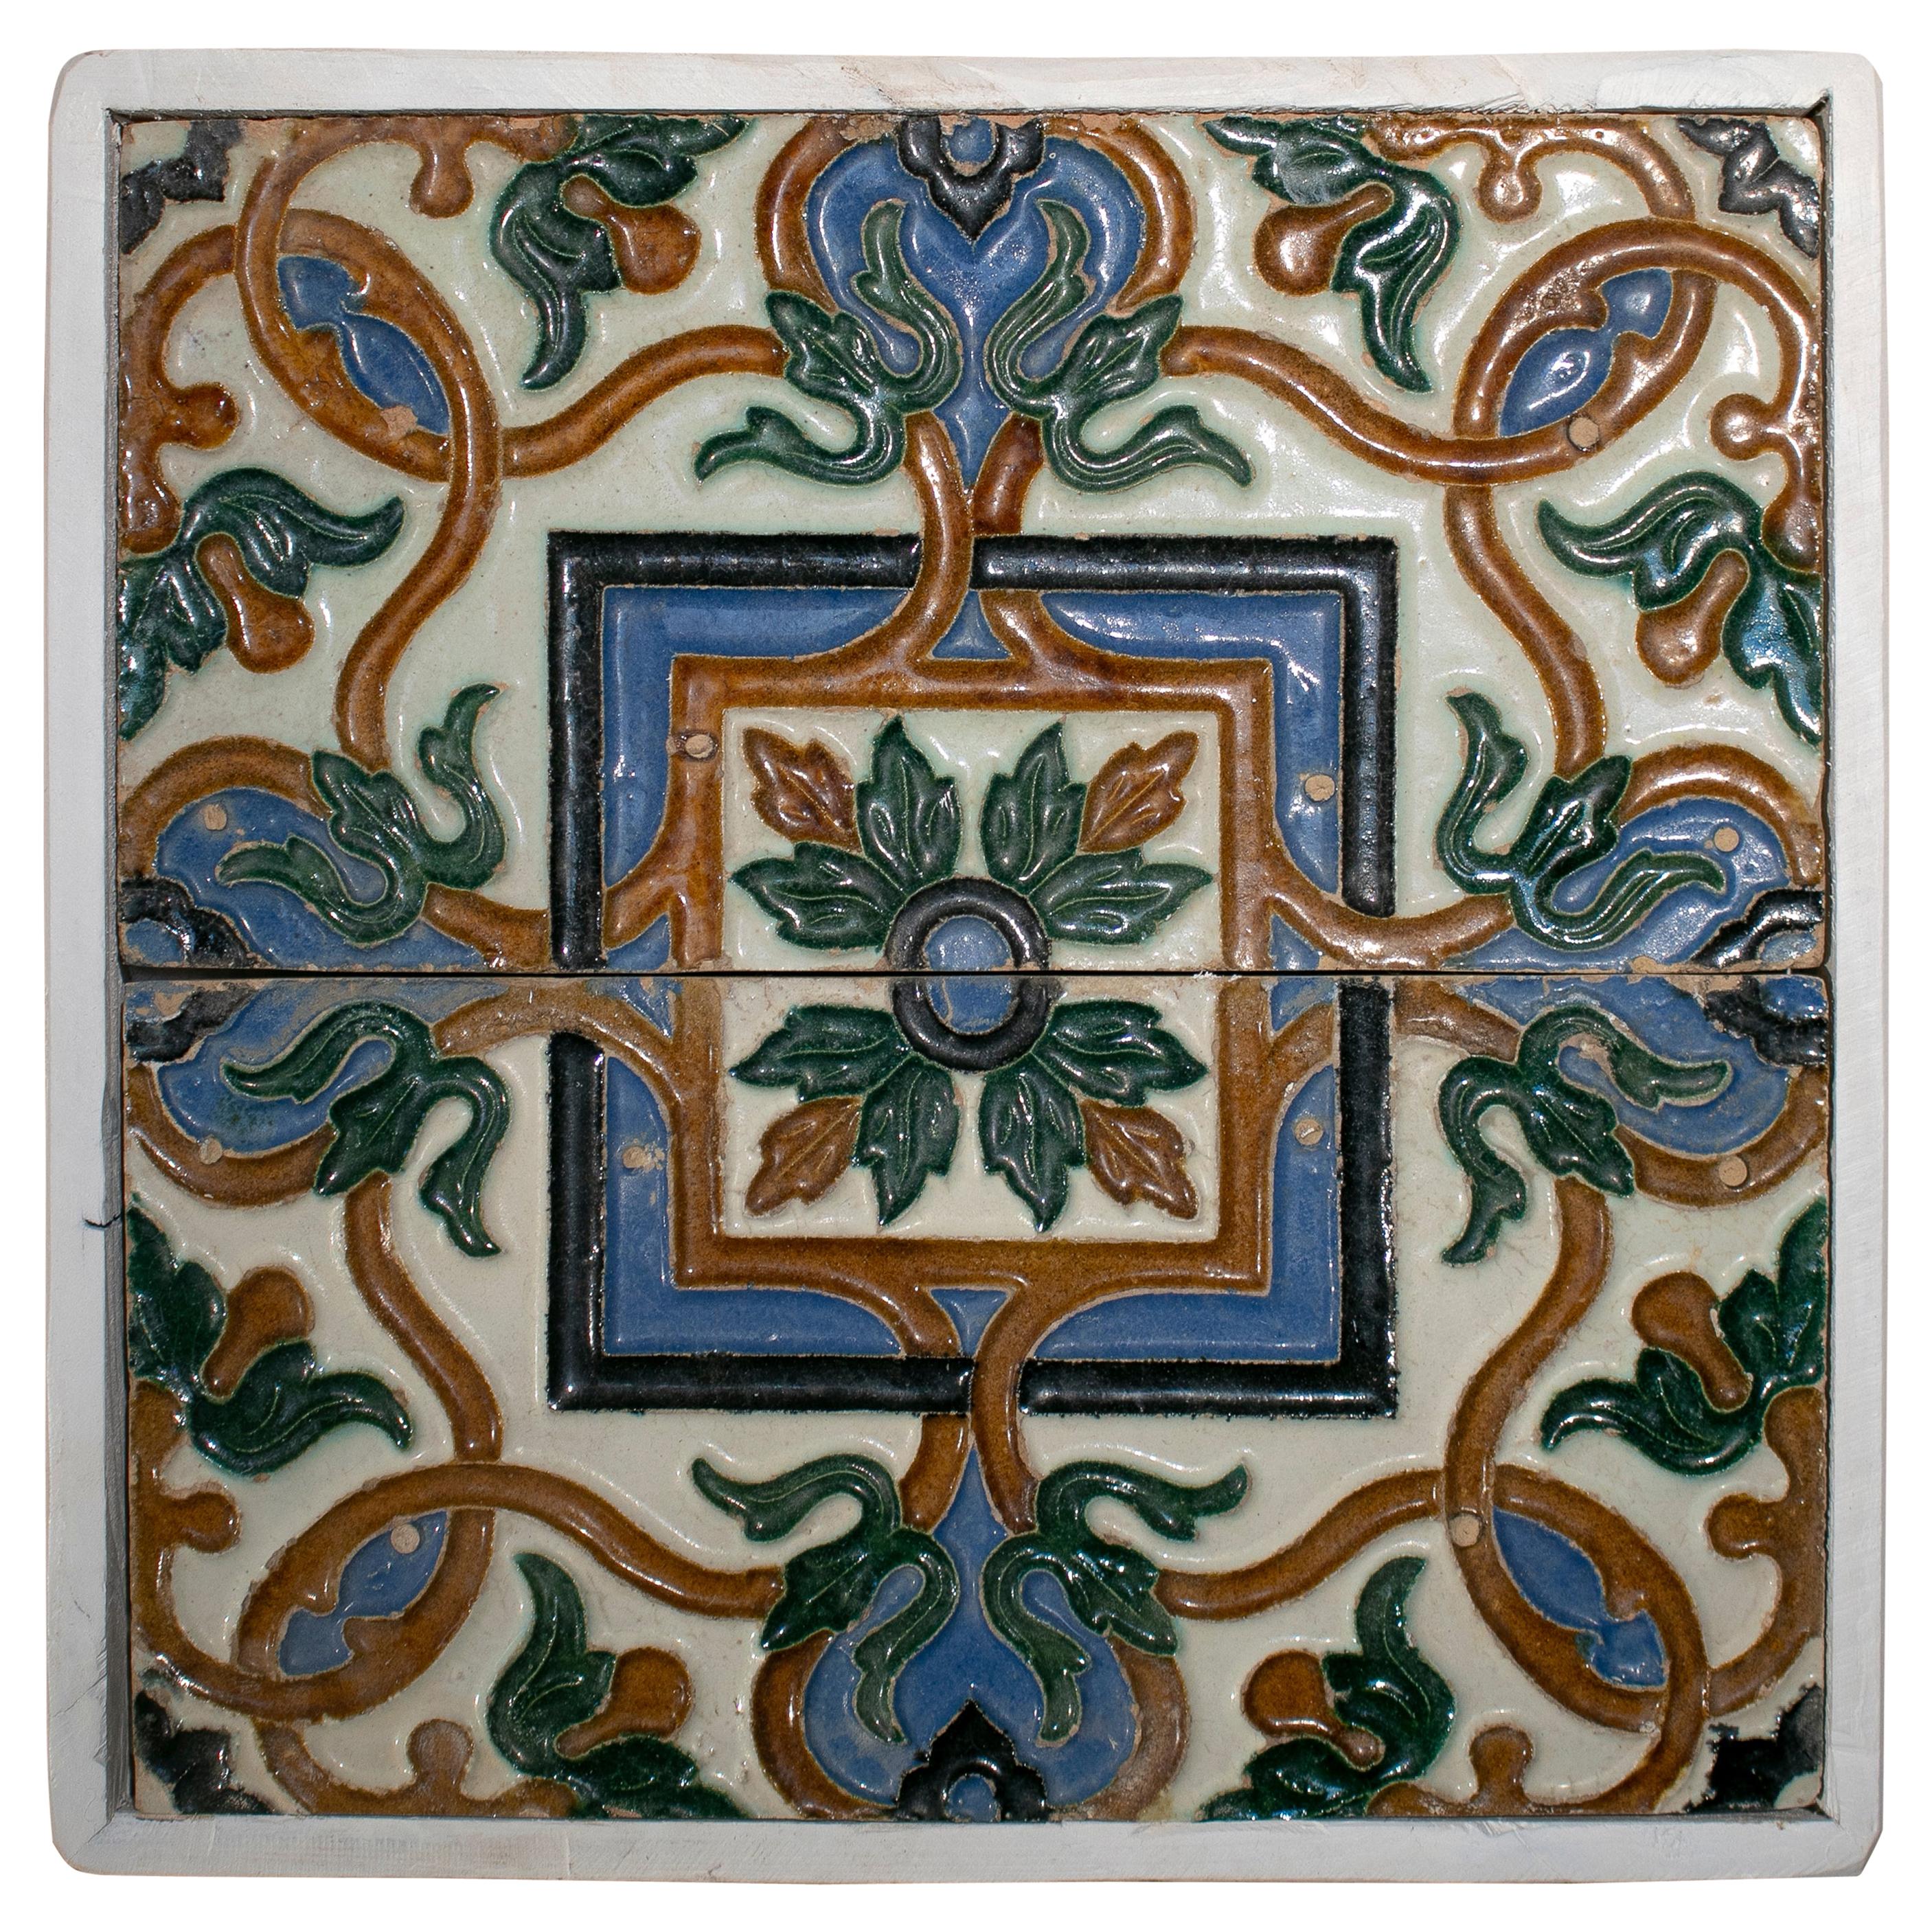 Spanisches Paar „Cuerda Seca“ farbige glasierte Keramikfliesen aus dem 19. Jahrhundert, gerahmt